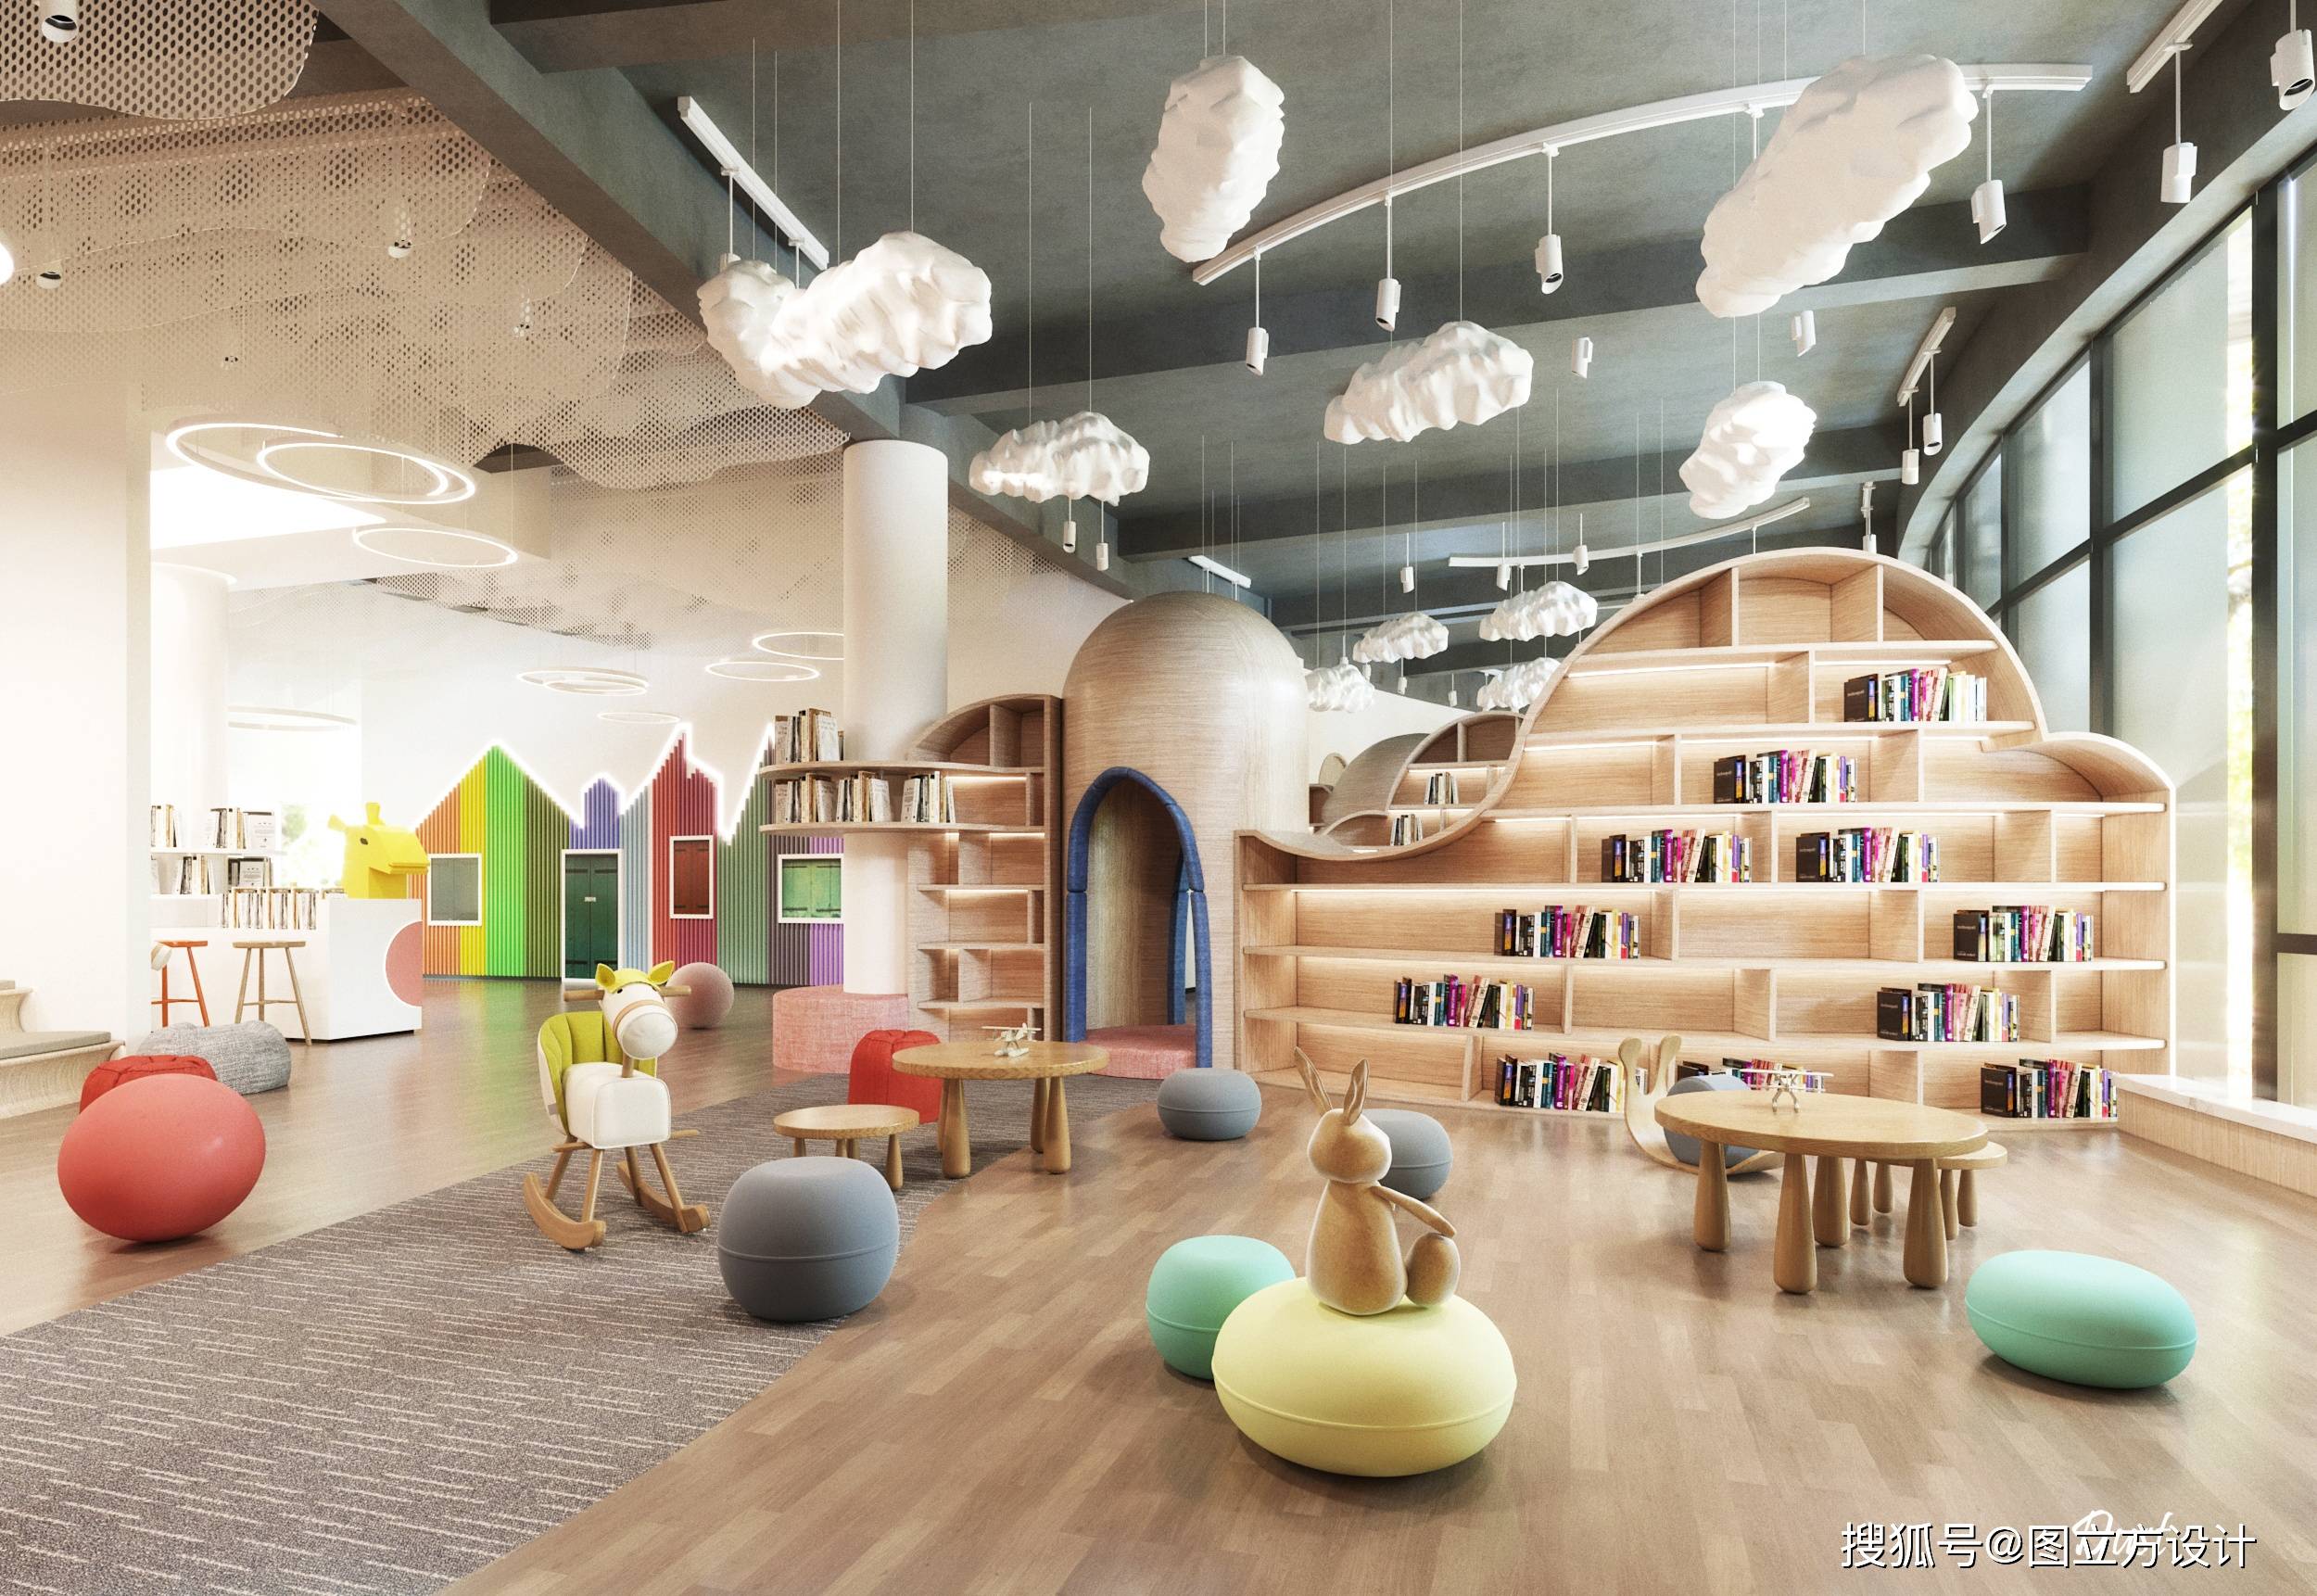 梦想启航,童趣盎然——儿童图书室阅览室效果图设计探索